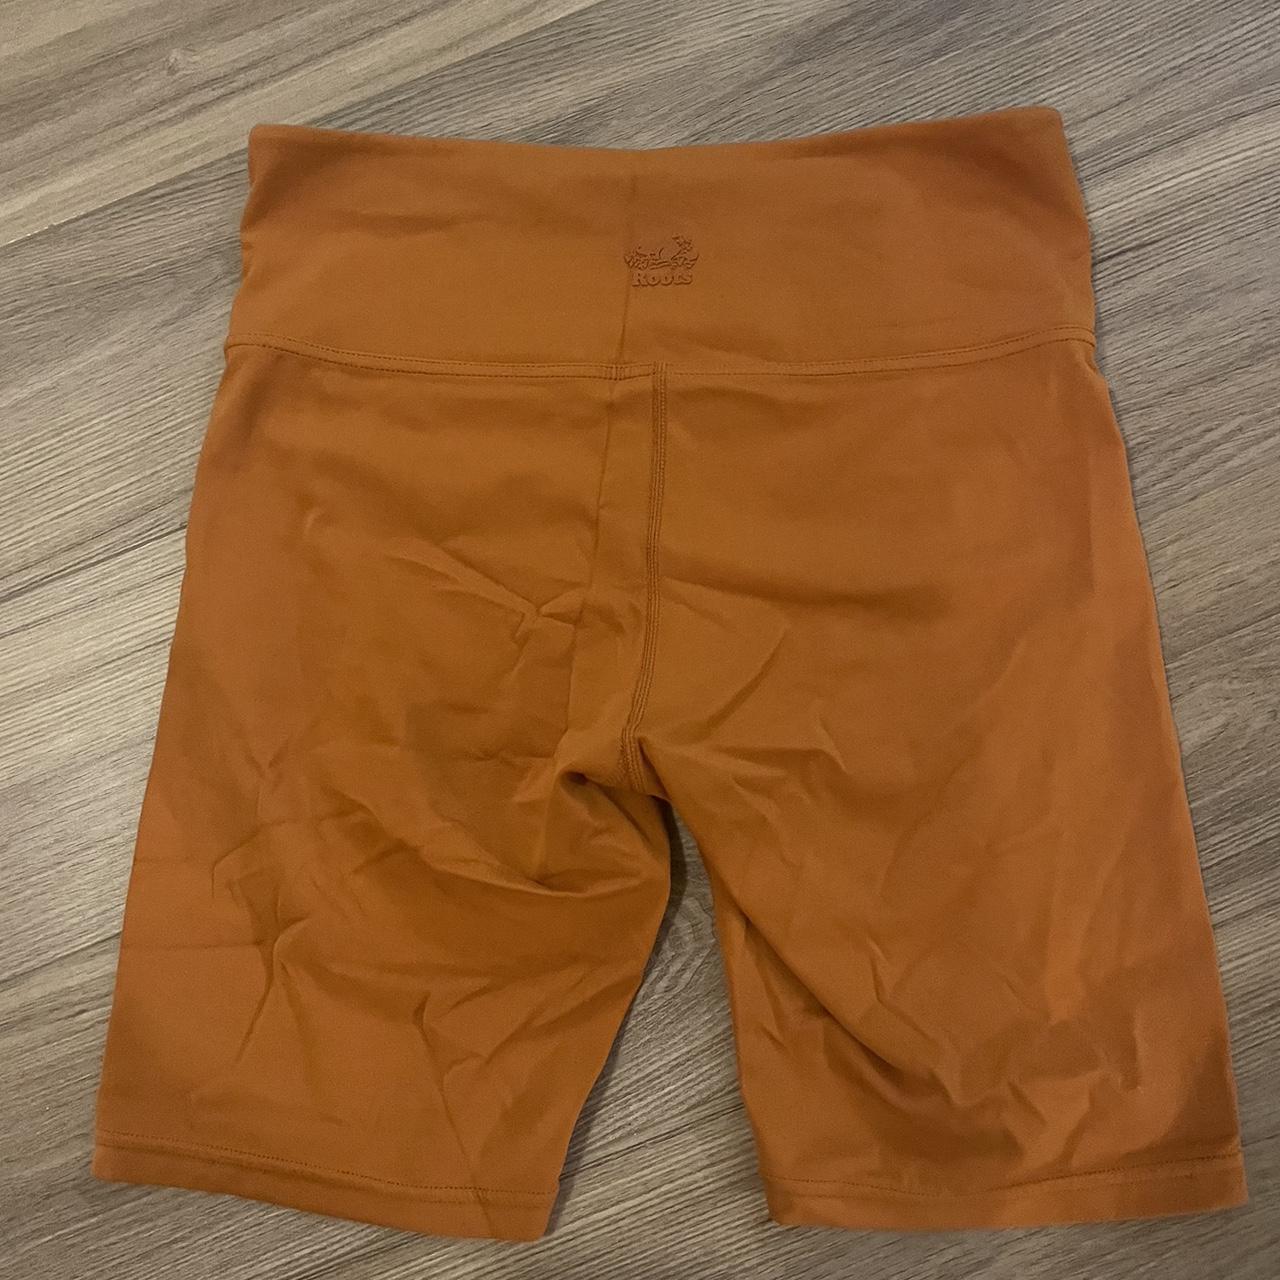 Orange Shorts - Roots